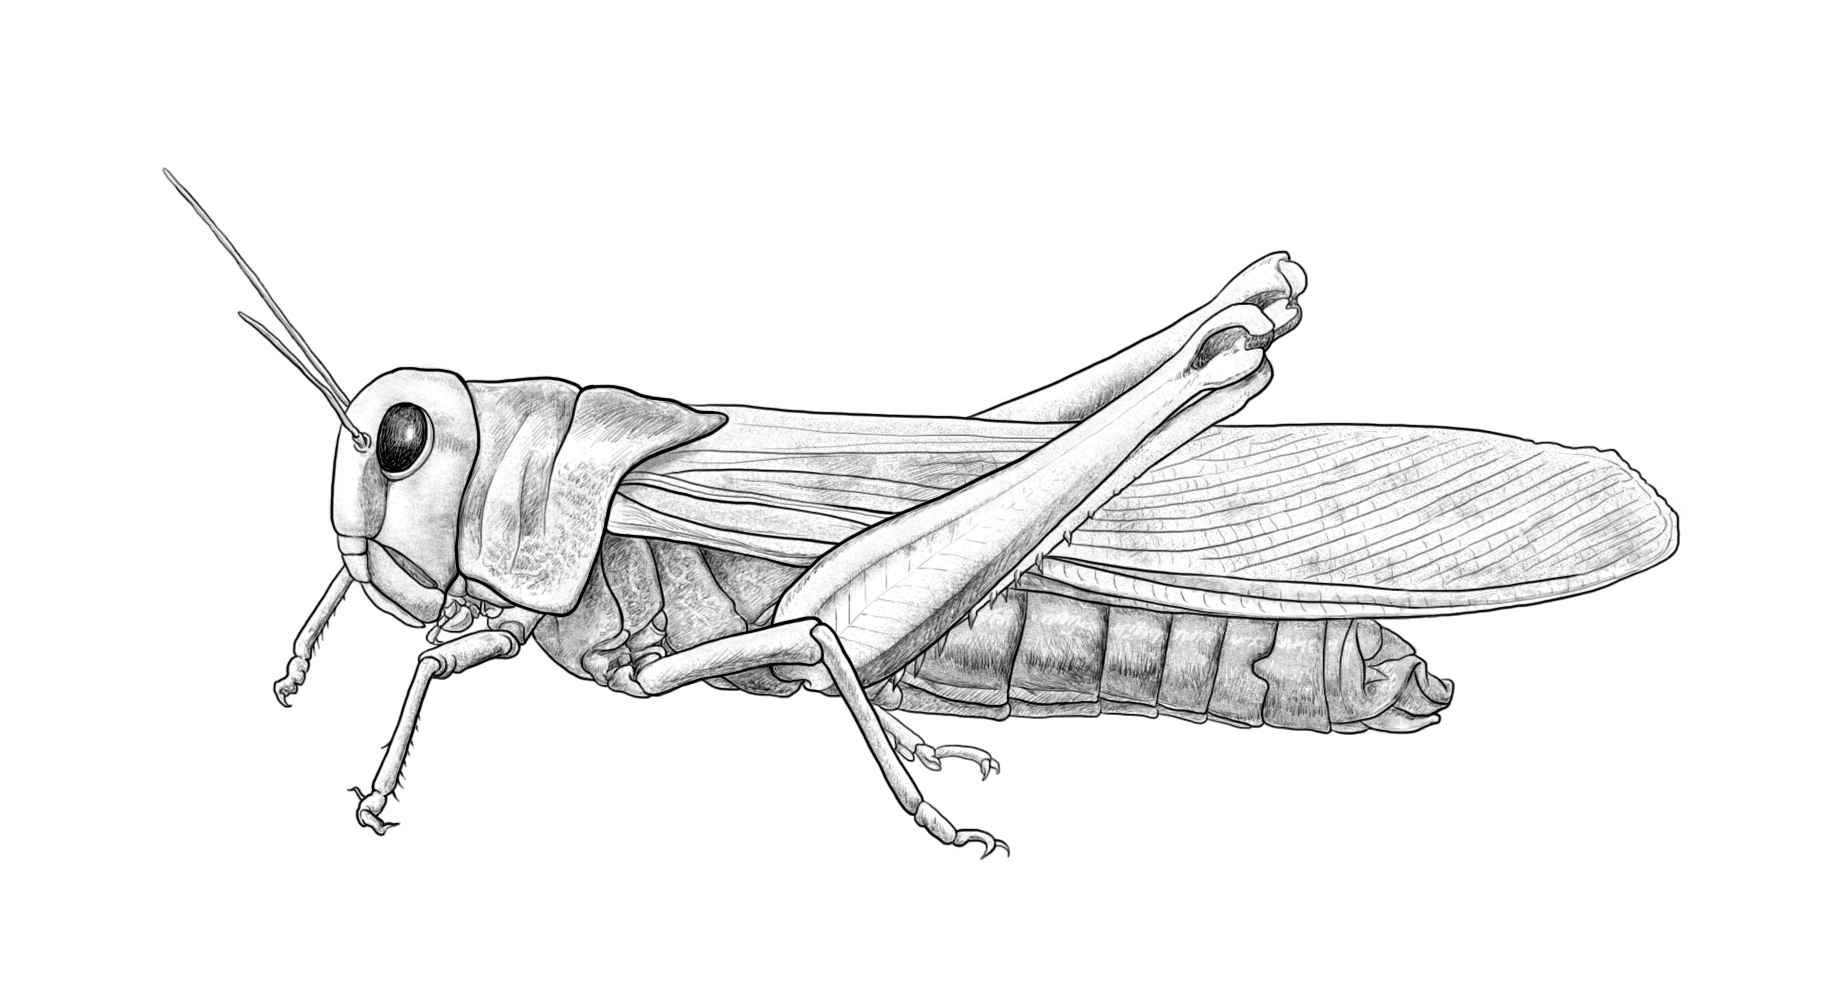 绘制蝗虫体躯的侧面图图片